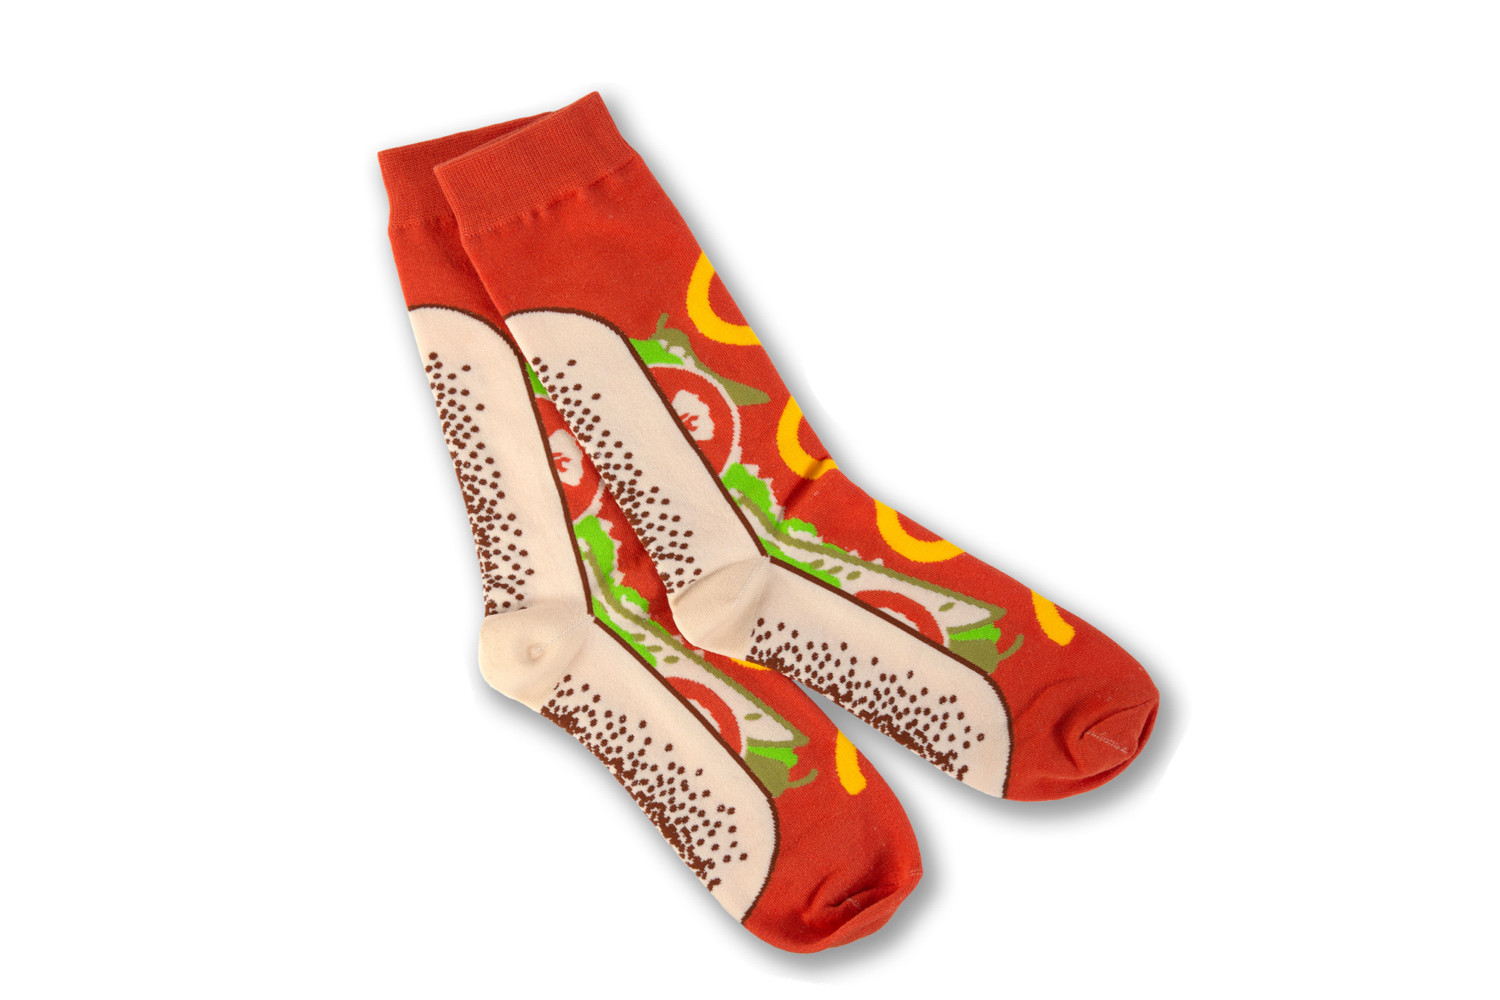 socks designed like hot dogs